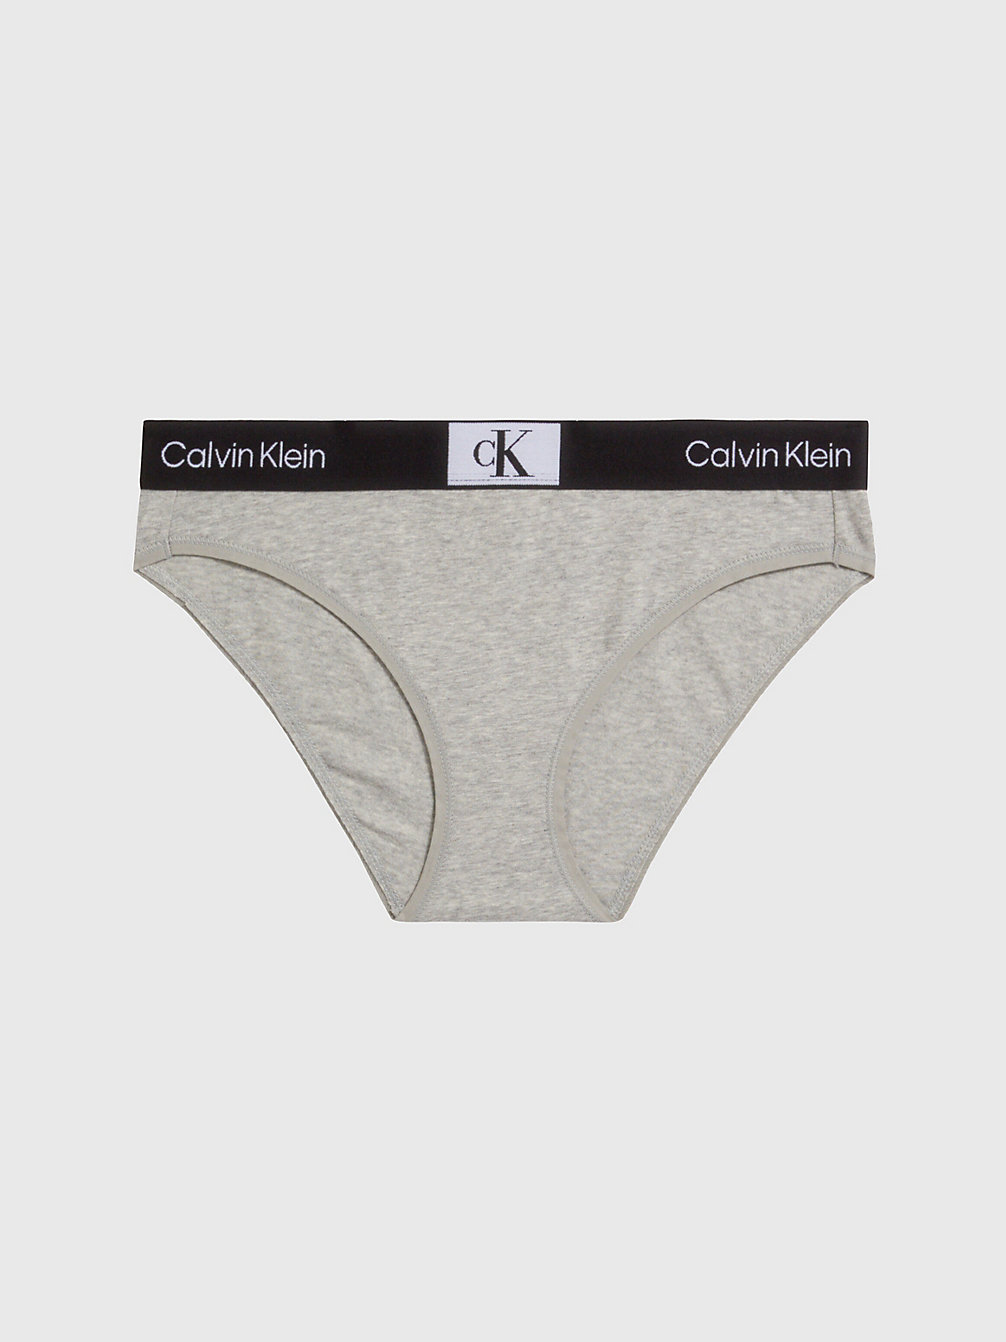 GREY HEATHER Slip Bikini - Ck96 undefined donna Calvin Klein